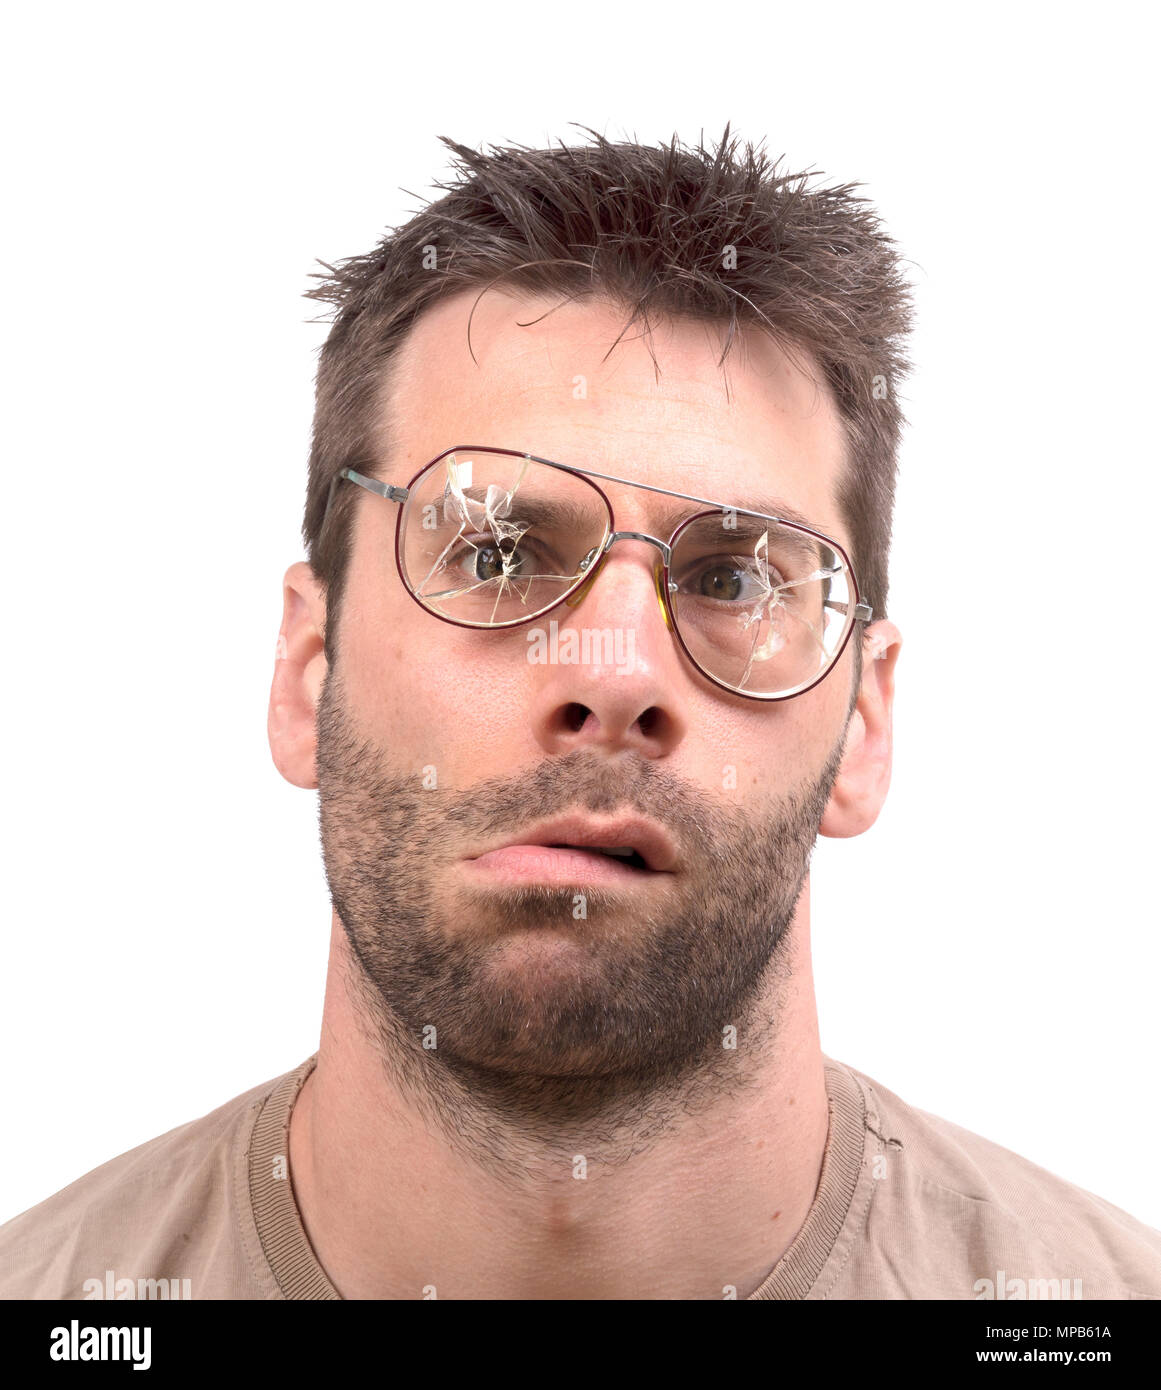 Goofy Hombre con gafas vintage roto - aislado en Fotografía de stock - Alamy